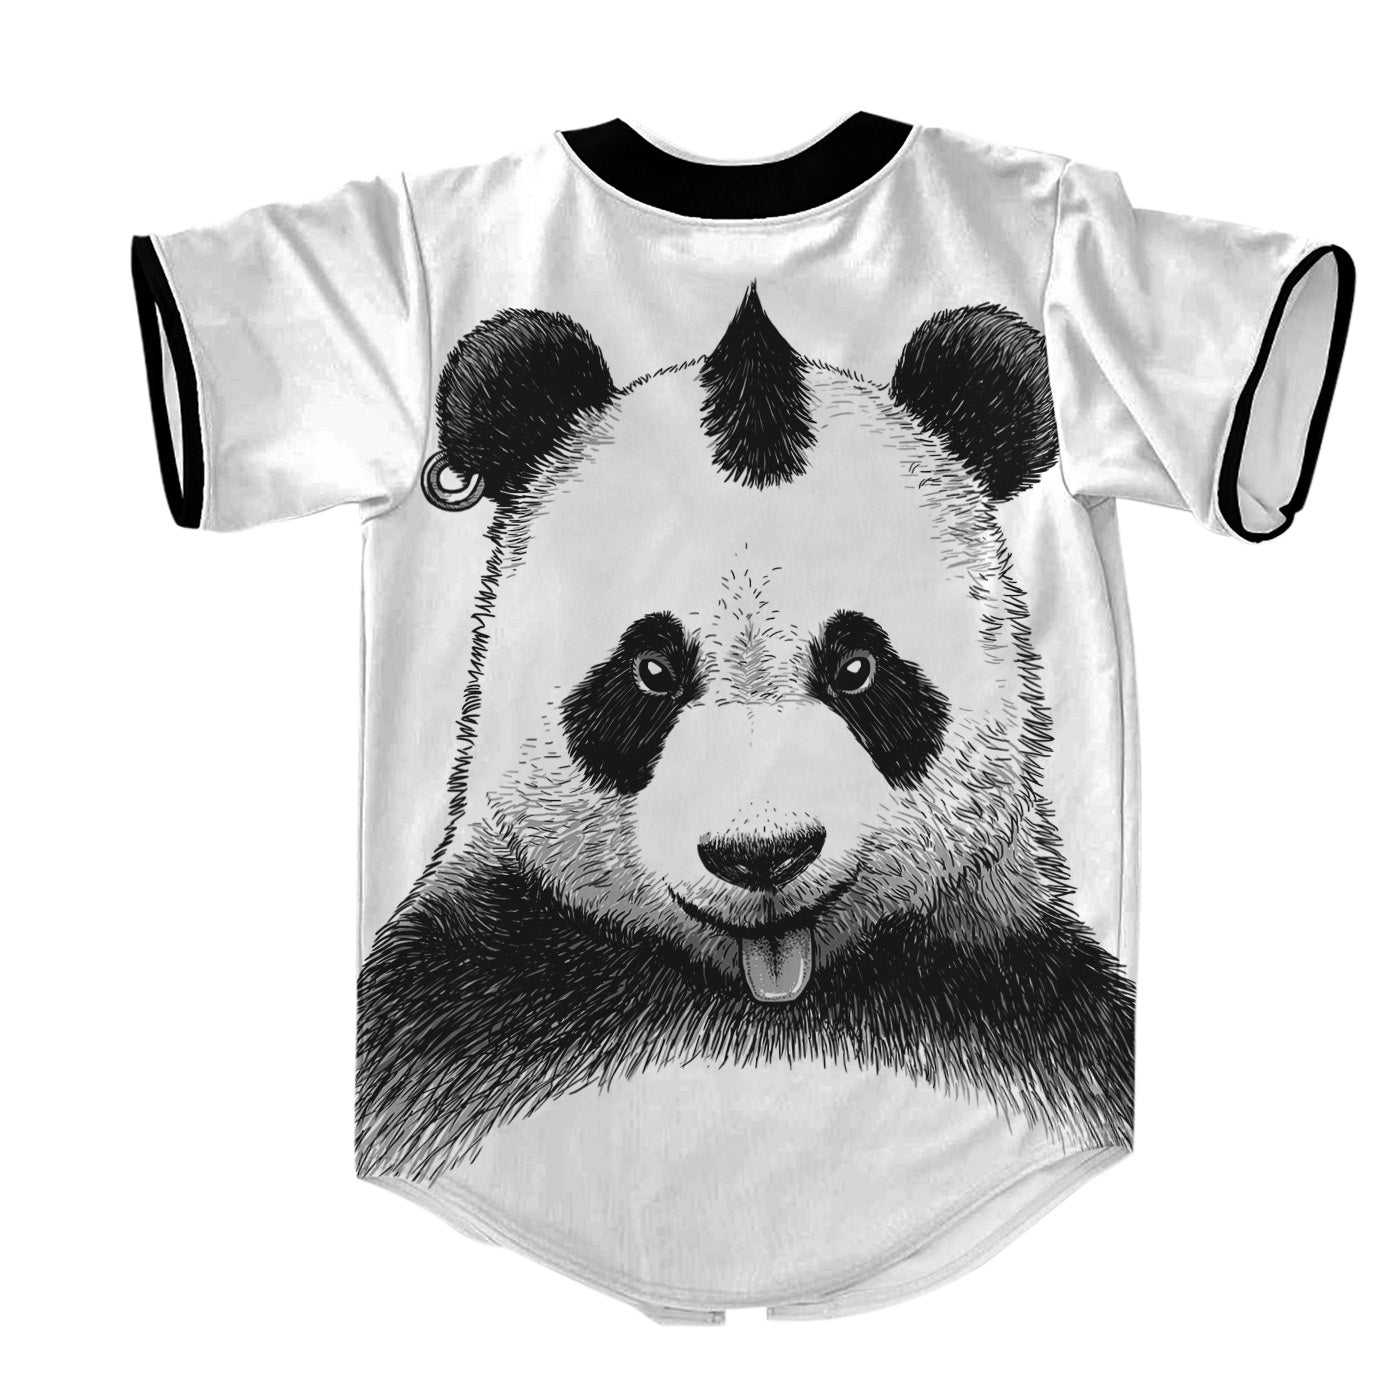 Punk Panda Jersey